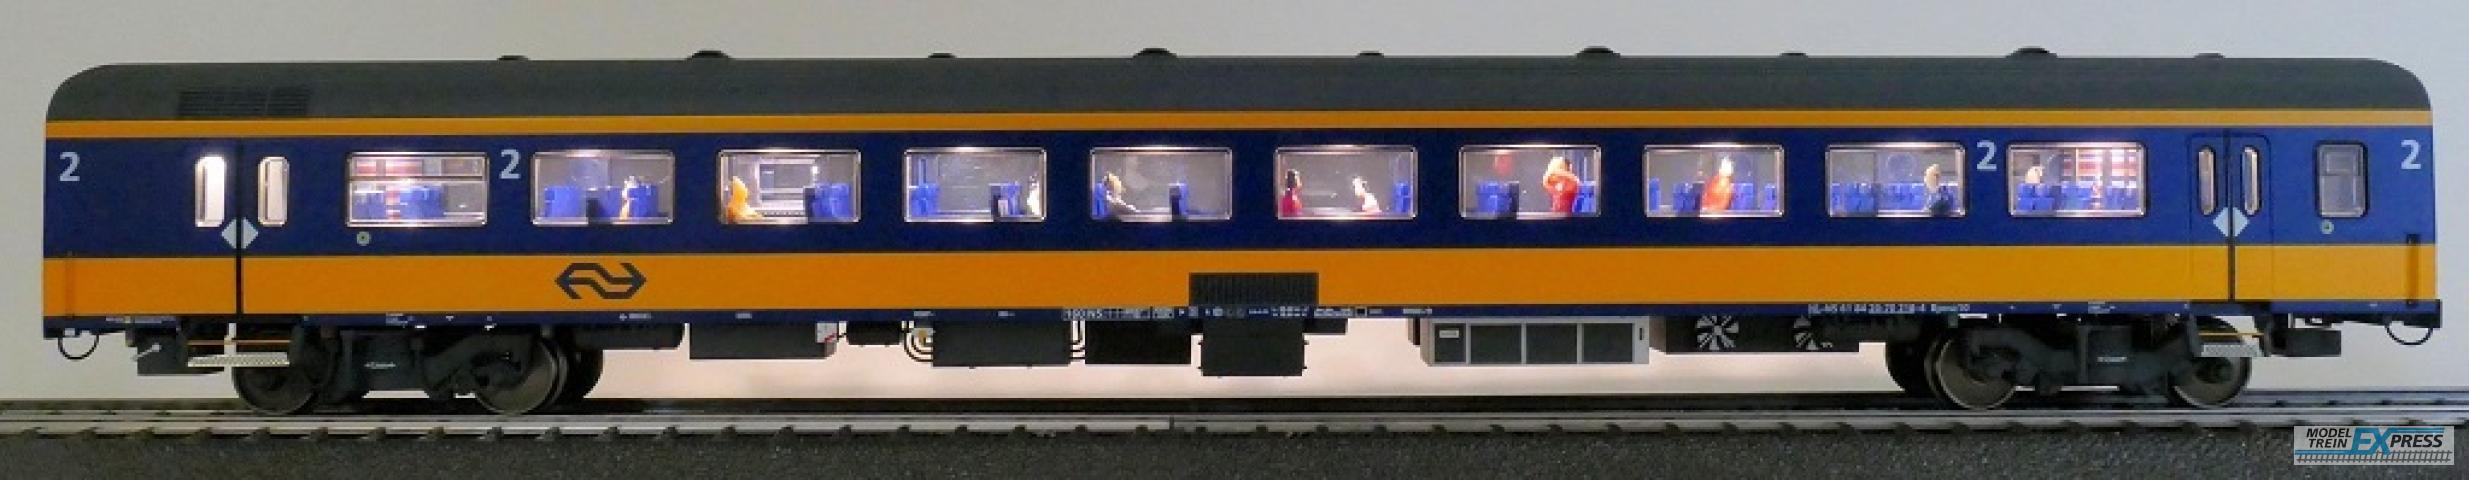 Exact-train 11155 NS ICRm Amsterdam - Breda für den Inlandseinsatz Reisezugwagen Bpmz10 ( Farbe Gelb / Blau) mit Beleuchtung und Figuren, Ep. VI